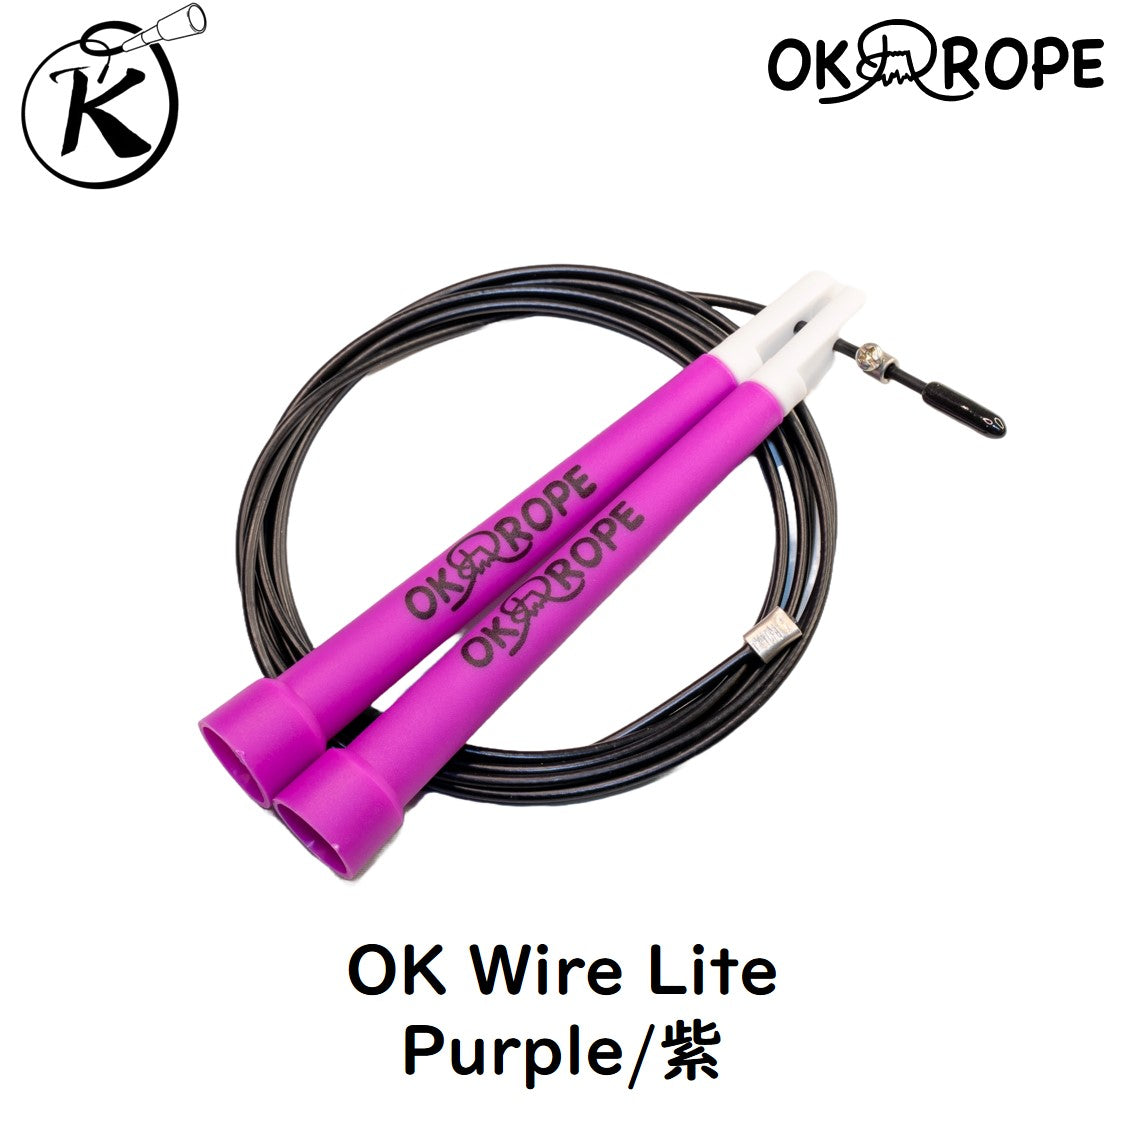 [初中上級者向] OK Wire Lite スピードワイヤーロープ (初めてのワイヤーロープに最適)